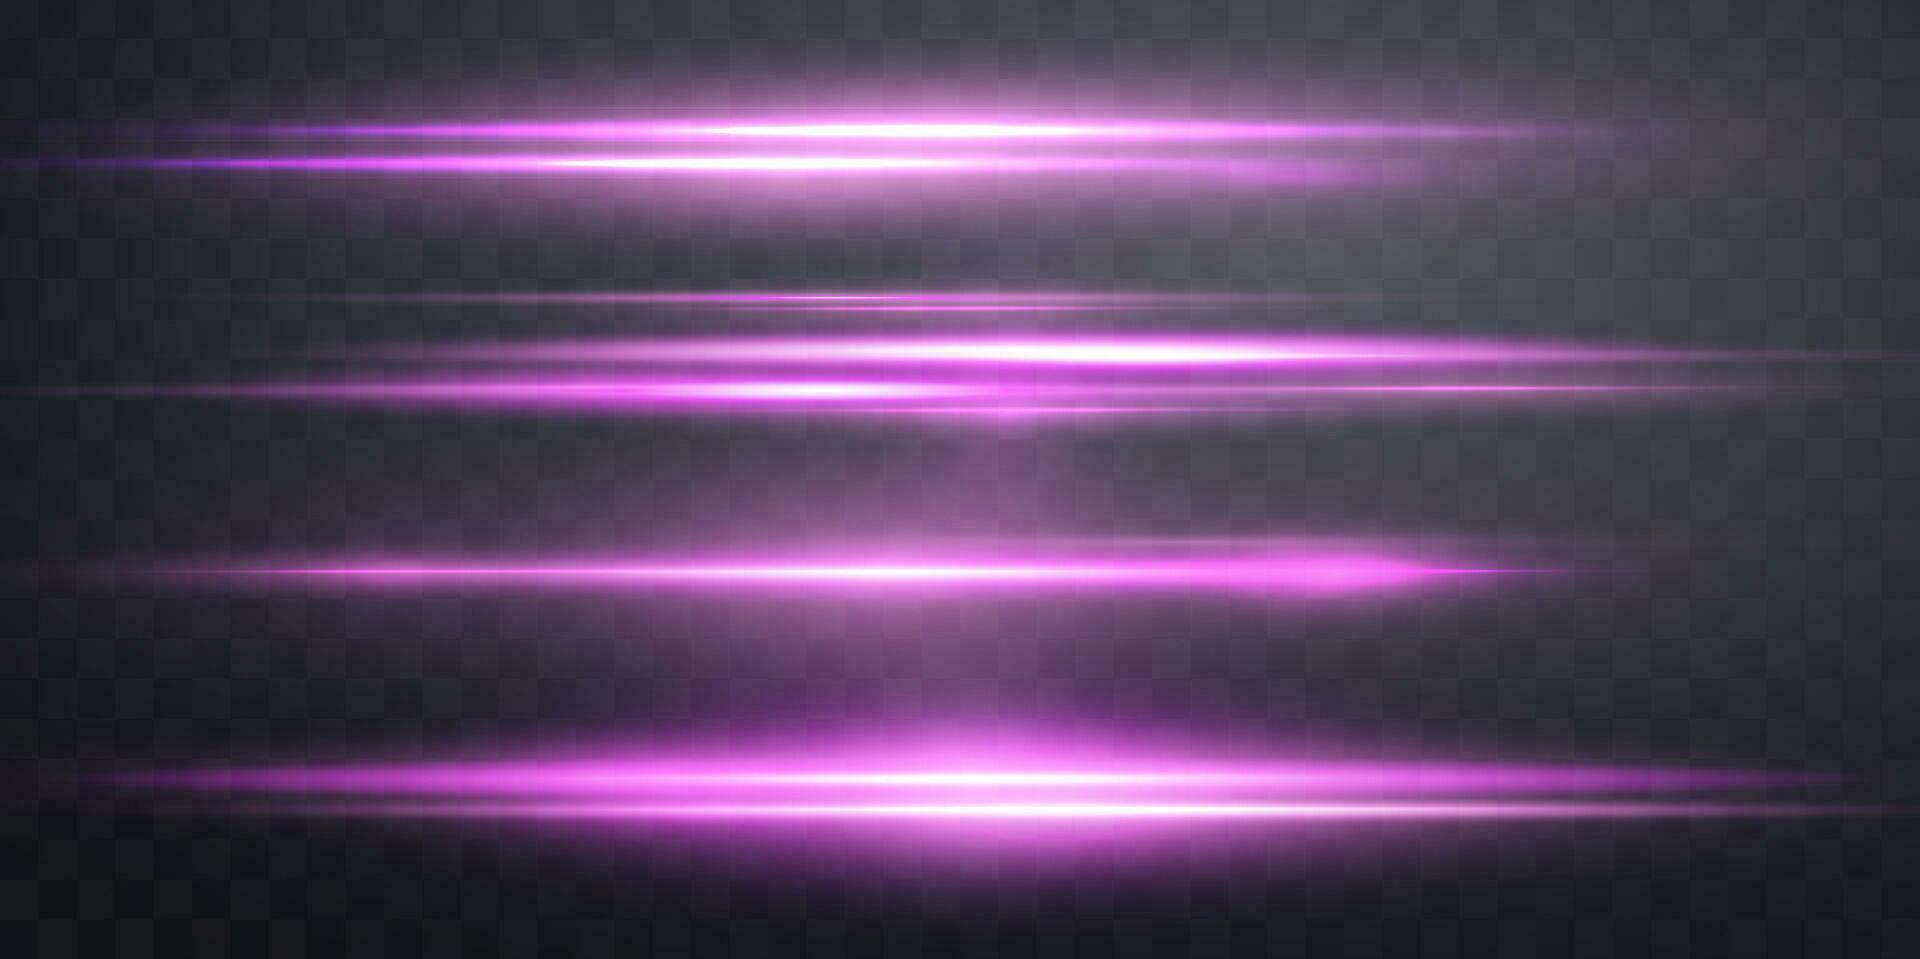 Rosa horizontal reflexo de lente. luz instantâneo com raios Holofote. Rosa brilho flare luz efeito. vetor ilustração.